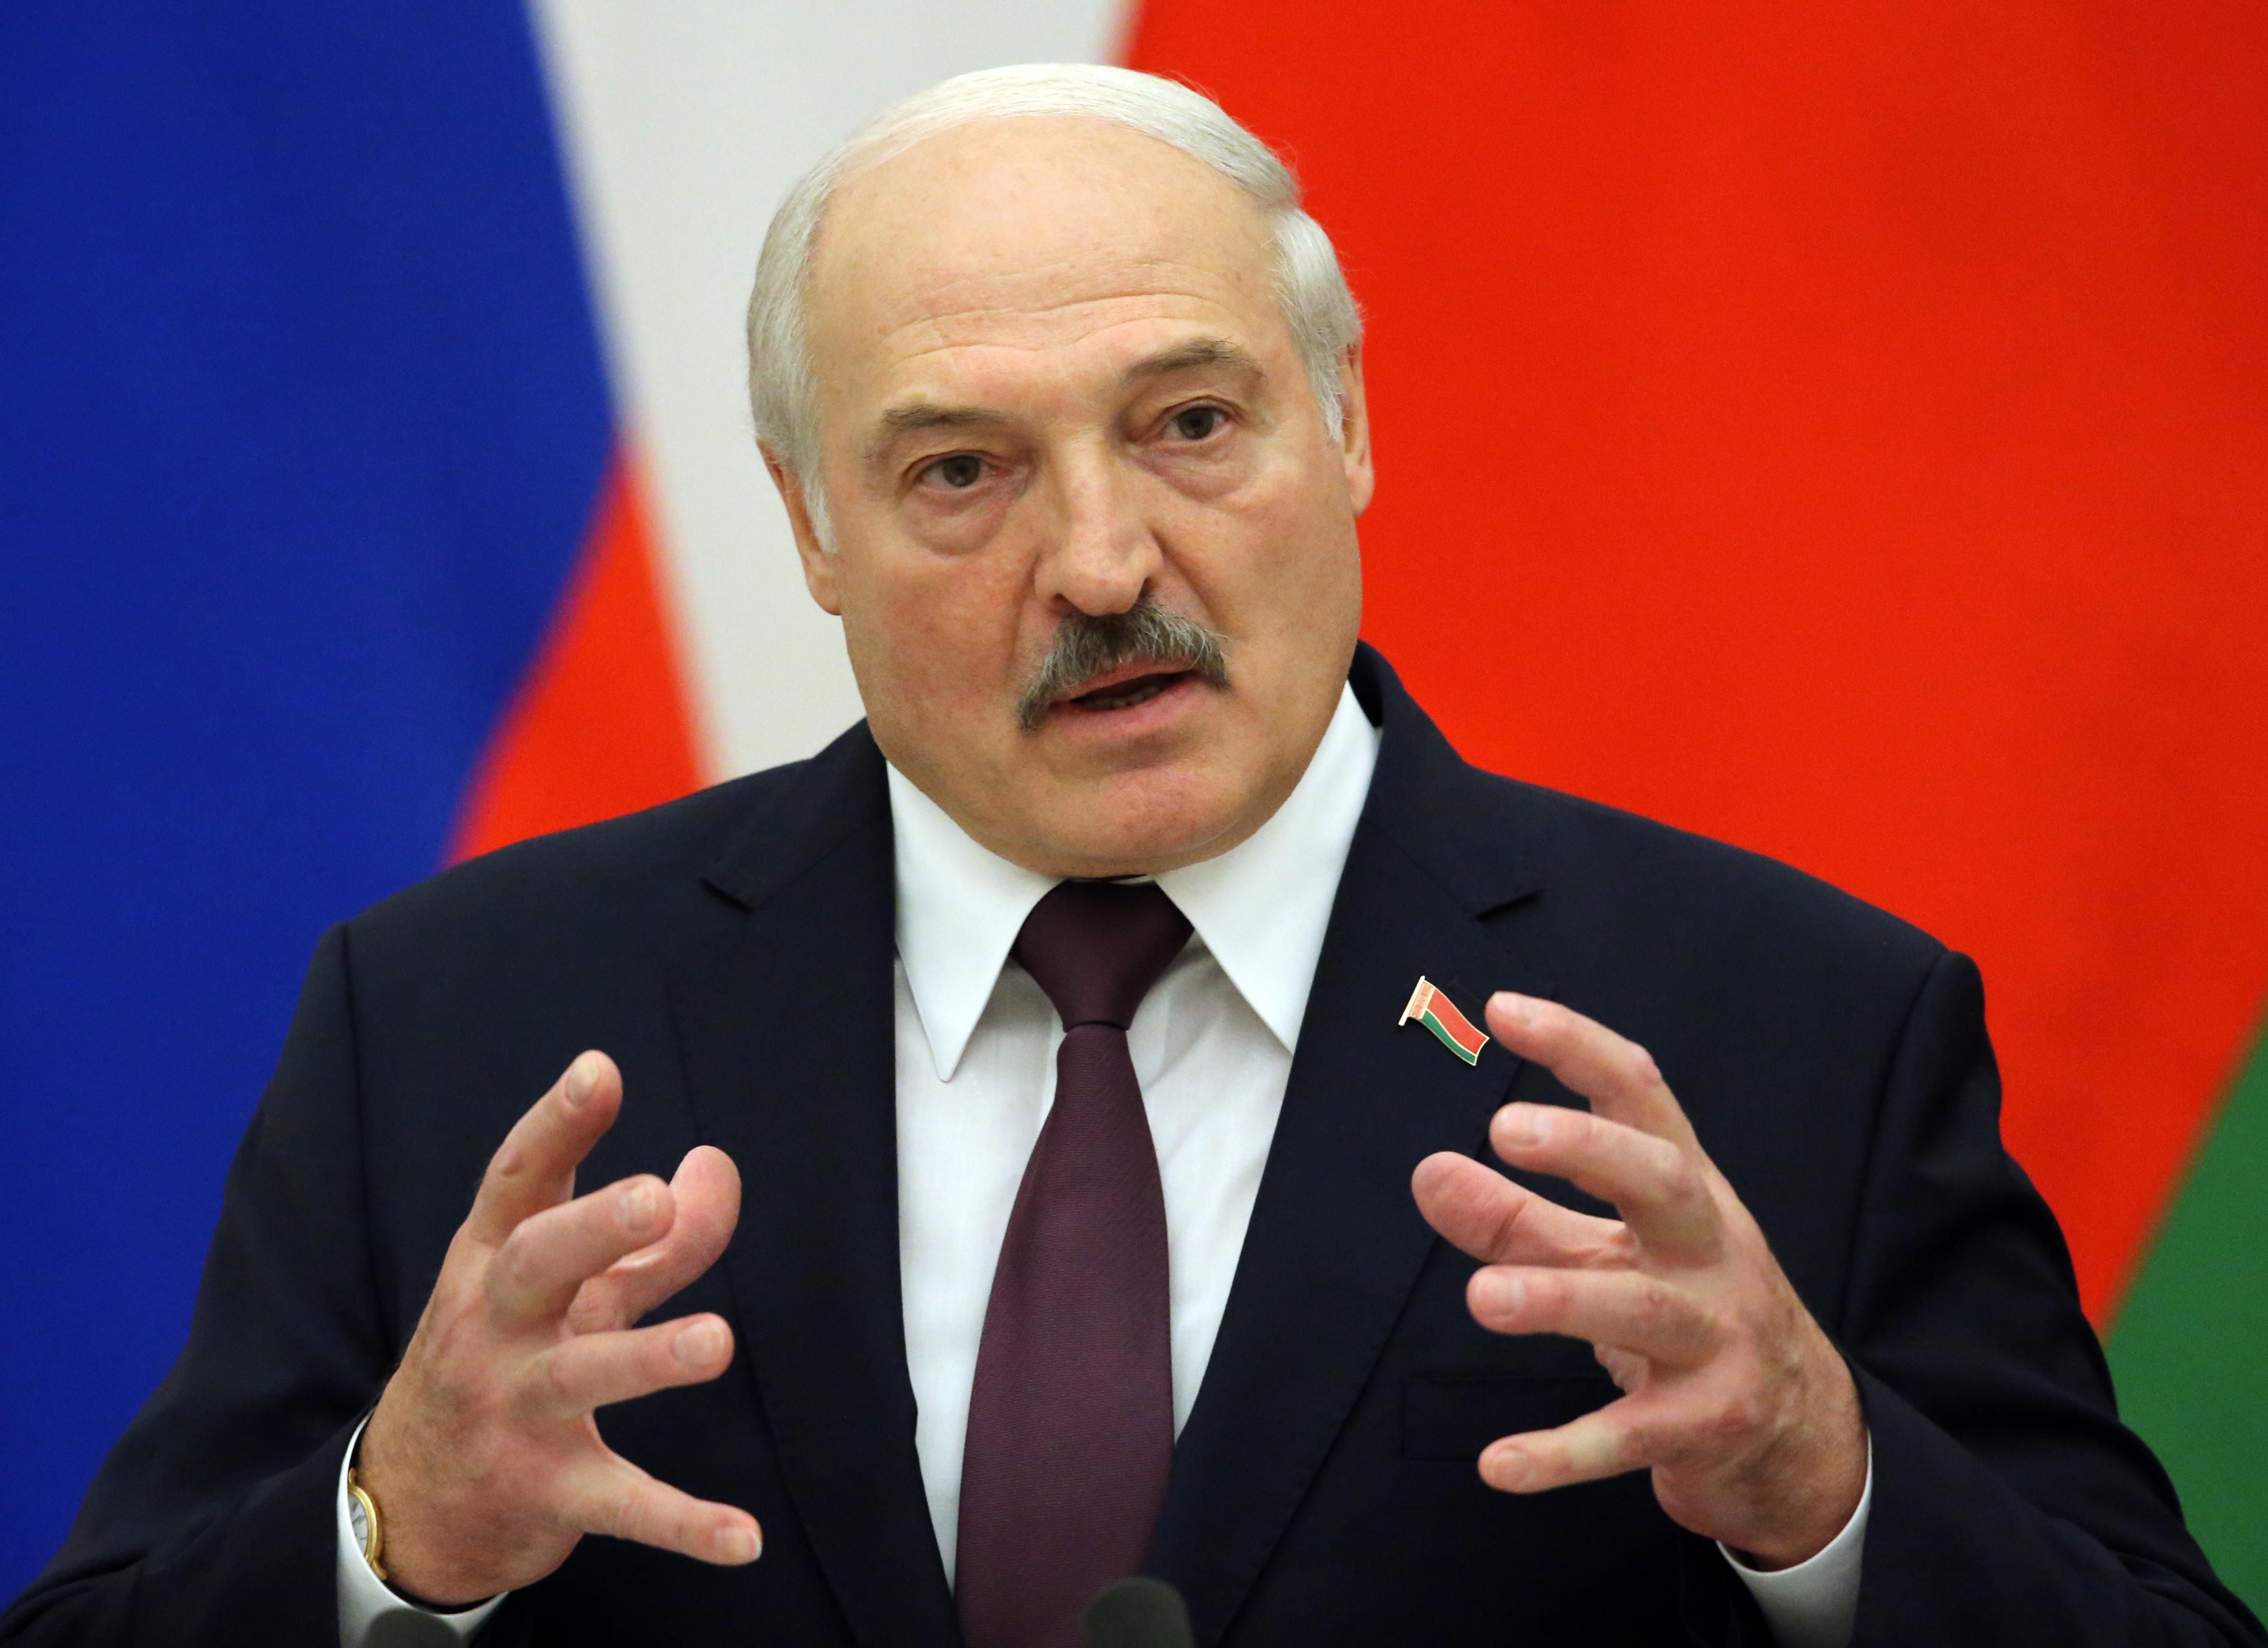 Может быть главным "контрабандистом": Германия расследует роль Лукашенко в наплыве нелегалов